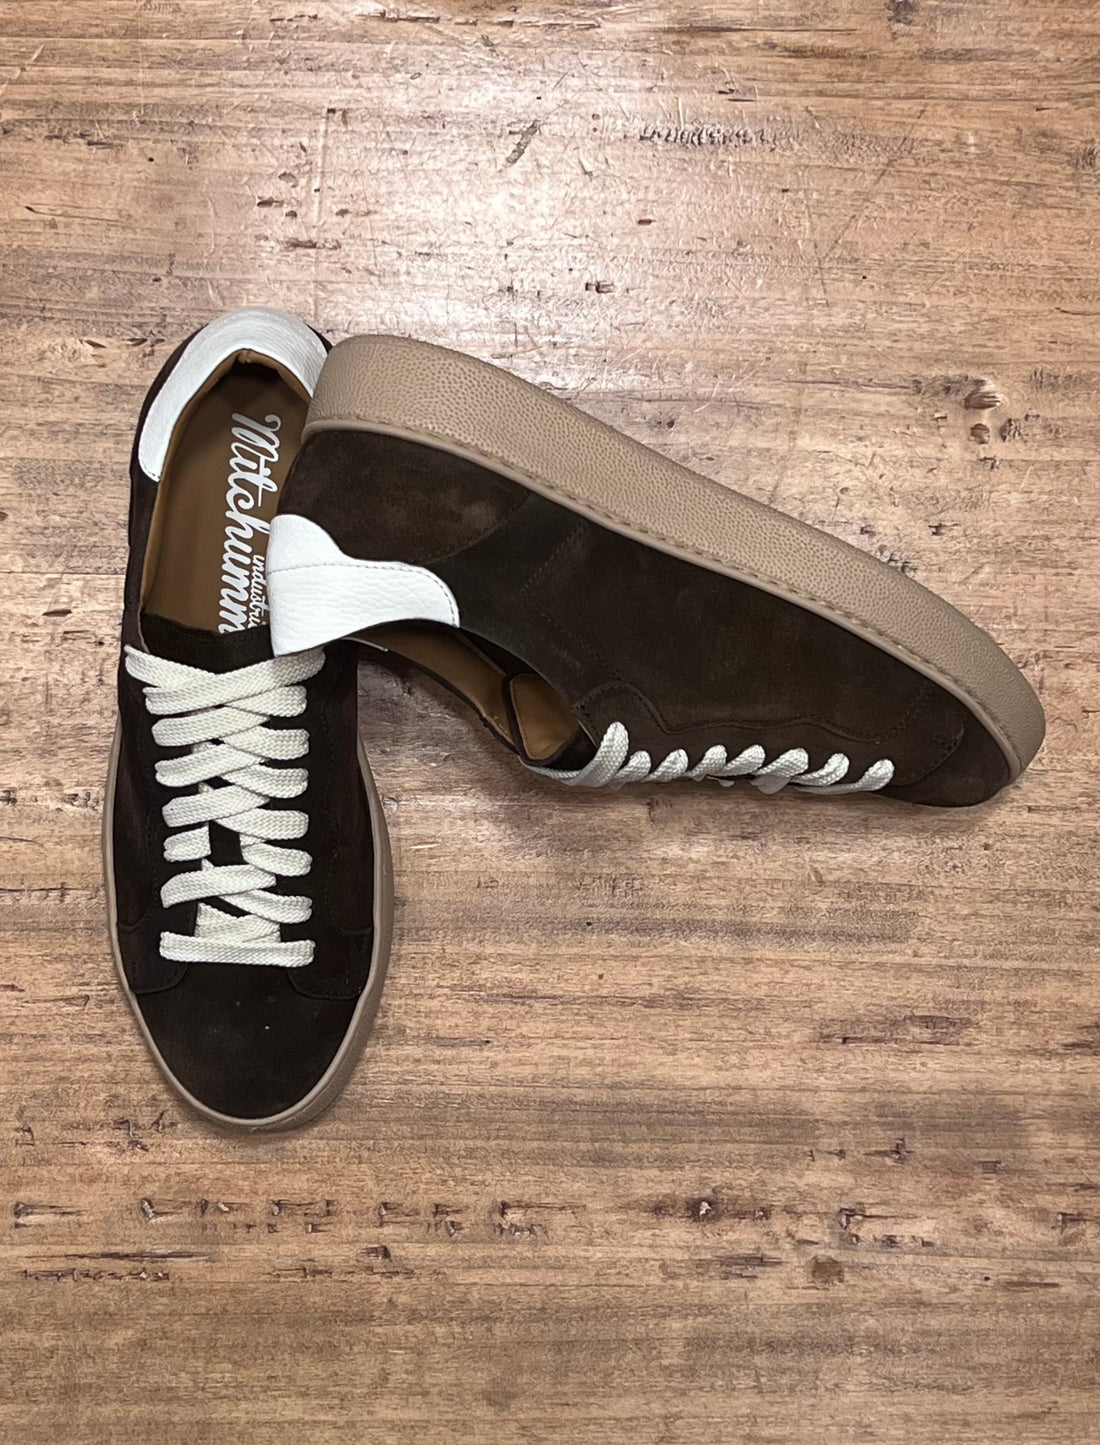 Low sneakers - Dark Brown suede